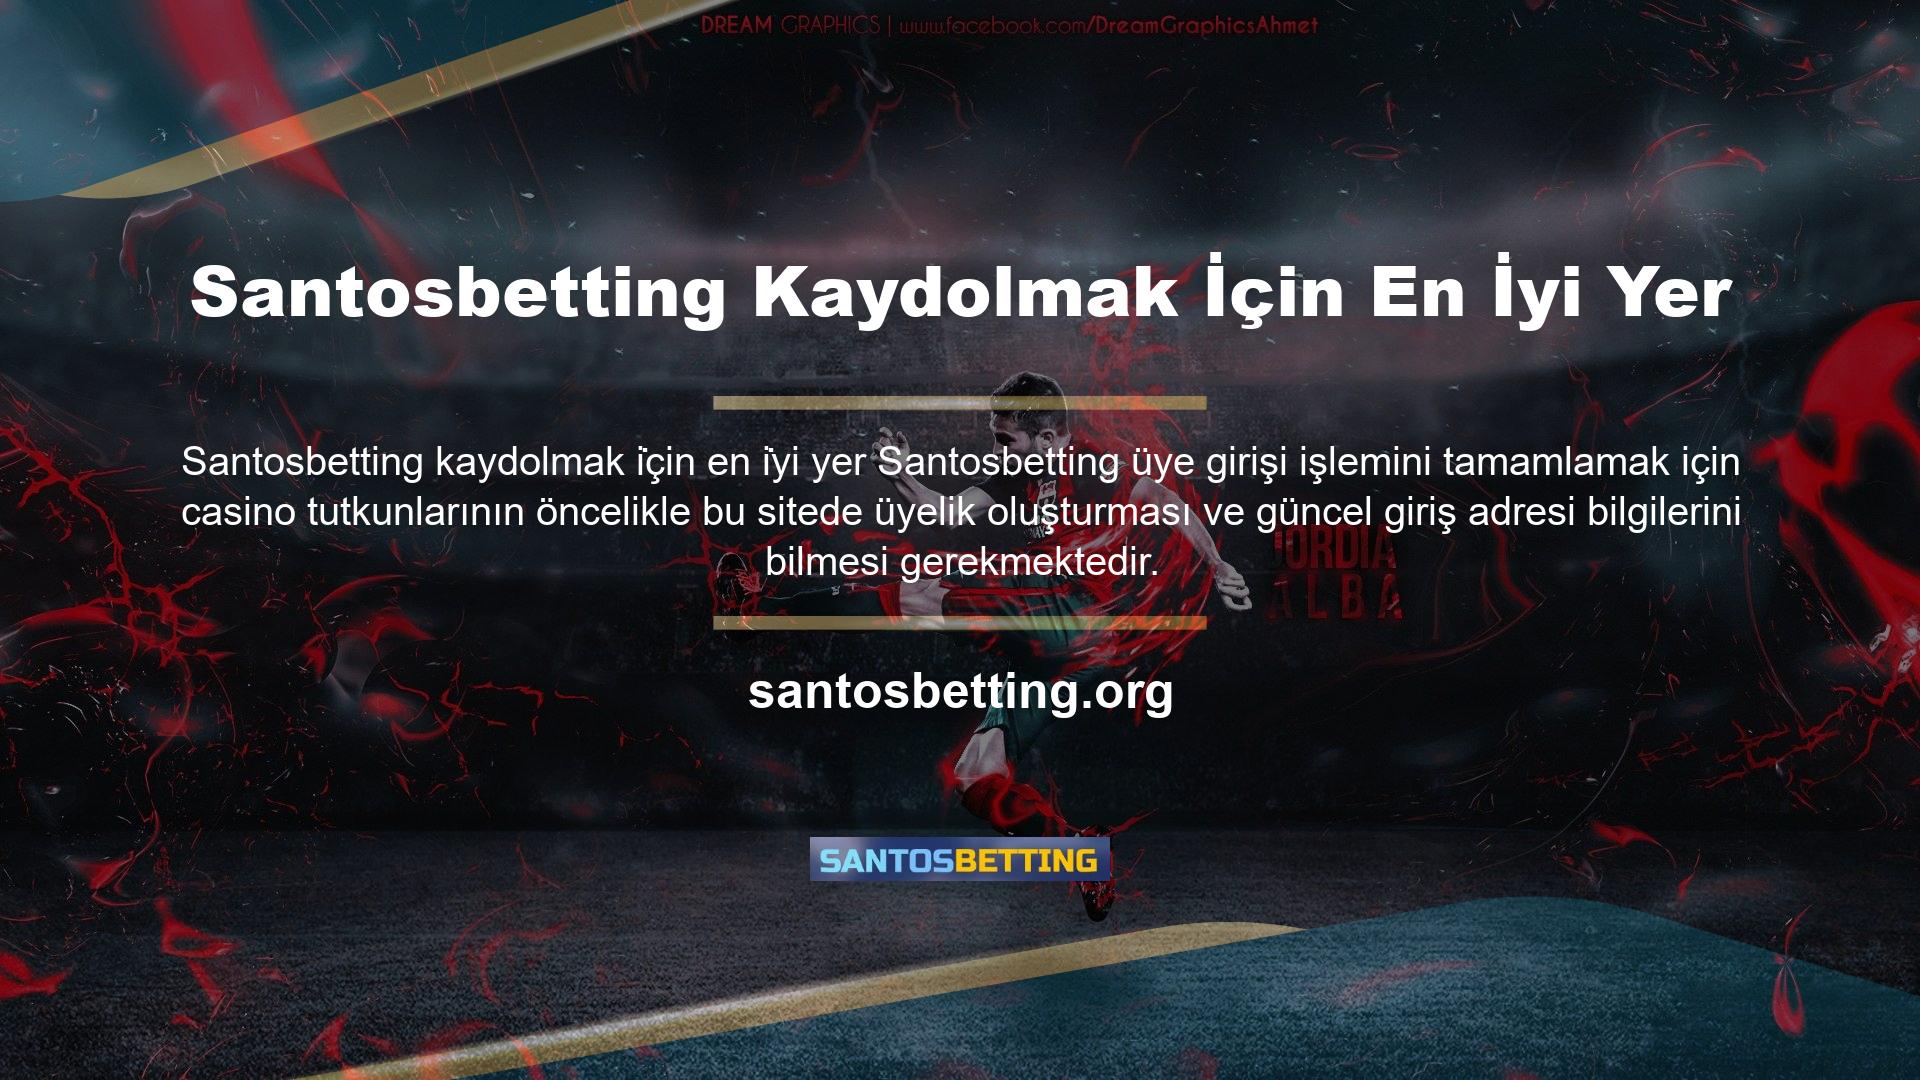 Casino üyeleri, site ana sayfasının sağ üst köşesinde bulunan 'Kaydol' seçeneğini kullanarak Santosbetting kaydolabilirler